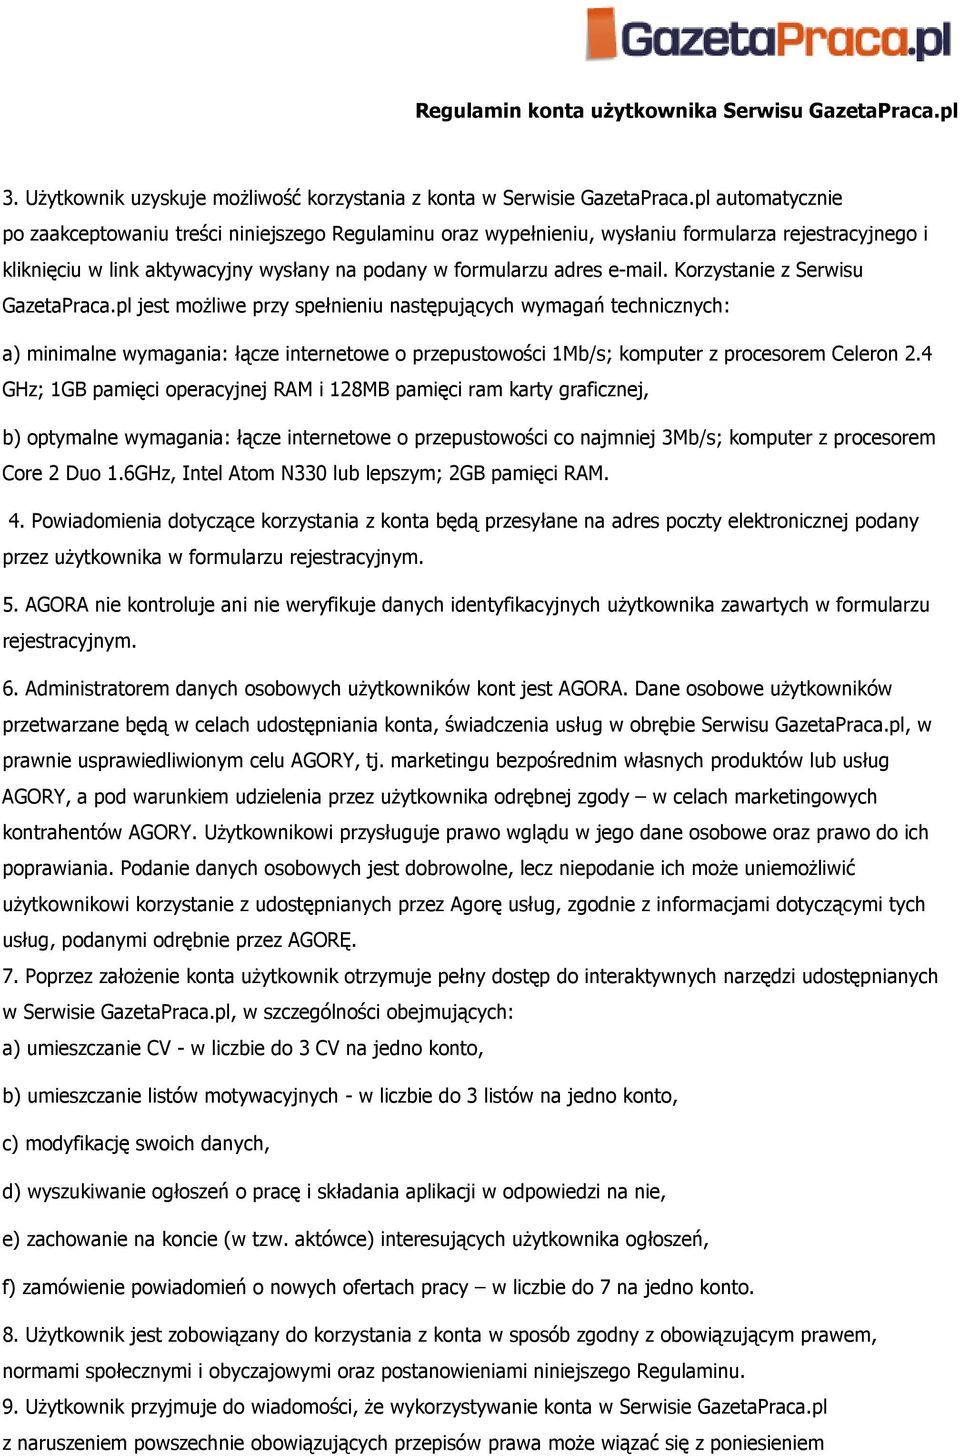 Korzystanie z Serwisu GazetaPraca.pl jest moŝliwe przy spełnieniu następujących wymagań technicznych: a) minimalne wymagania: łącze internetowe o przepustowości 1Mb/s; komputer z procesorem Celeron 2.